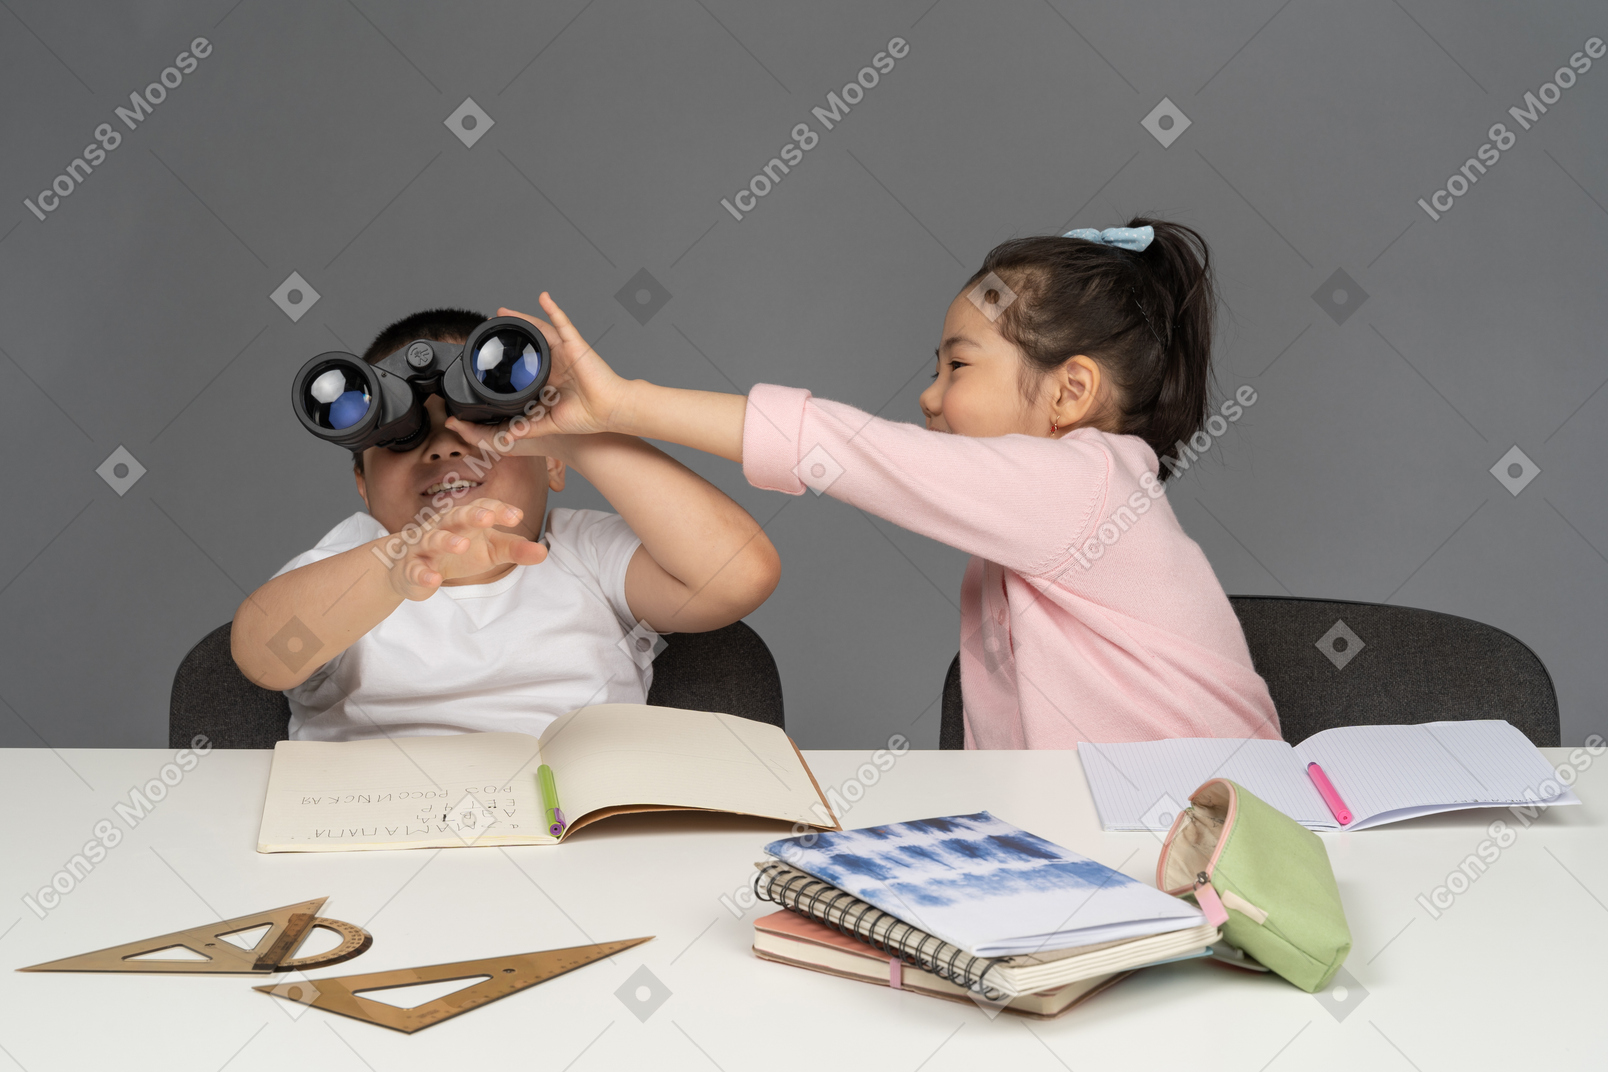 Bambina che prende il binocolo da suo fratello